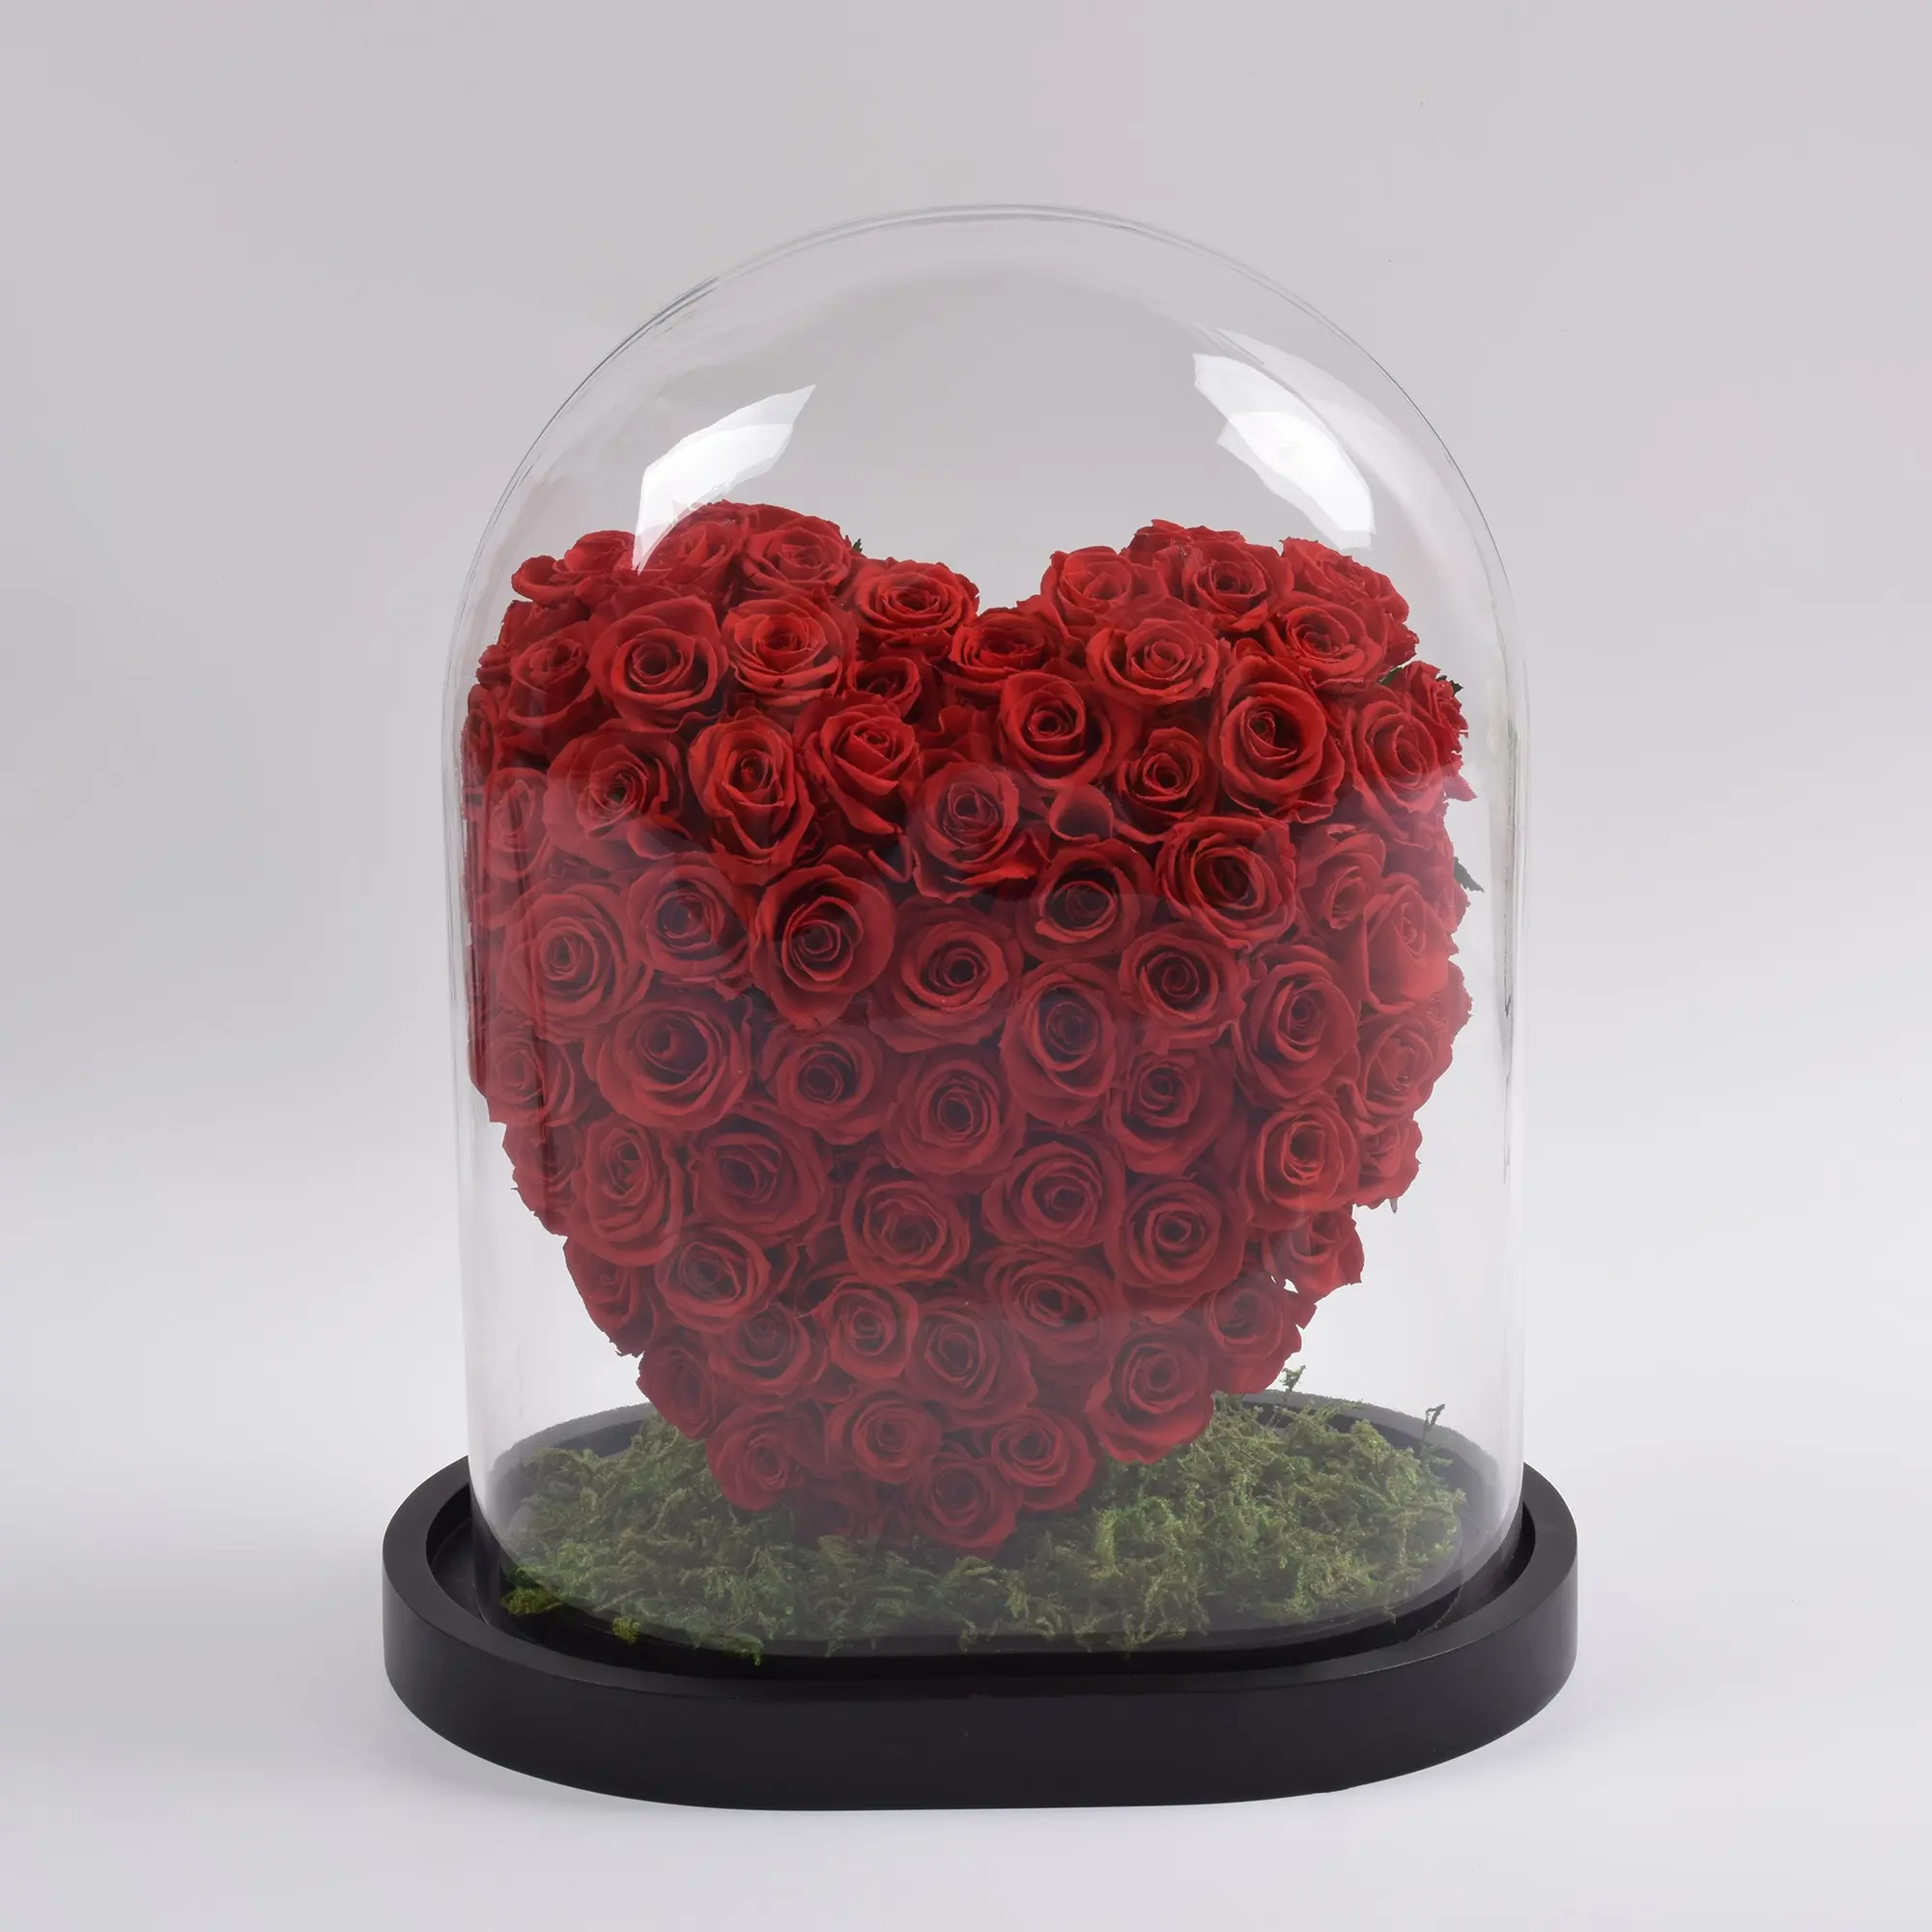 HFloral Grosir Bunga Mawar Asli Alami Yang Diawetkan Abadi Berbentuk Hati Di Kubah Kaca untuk Hari Valentine